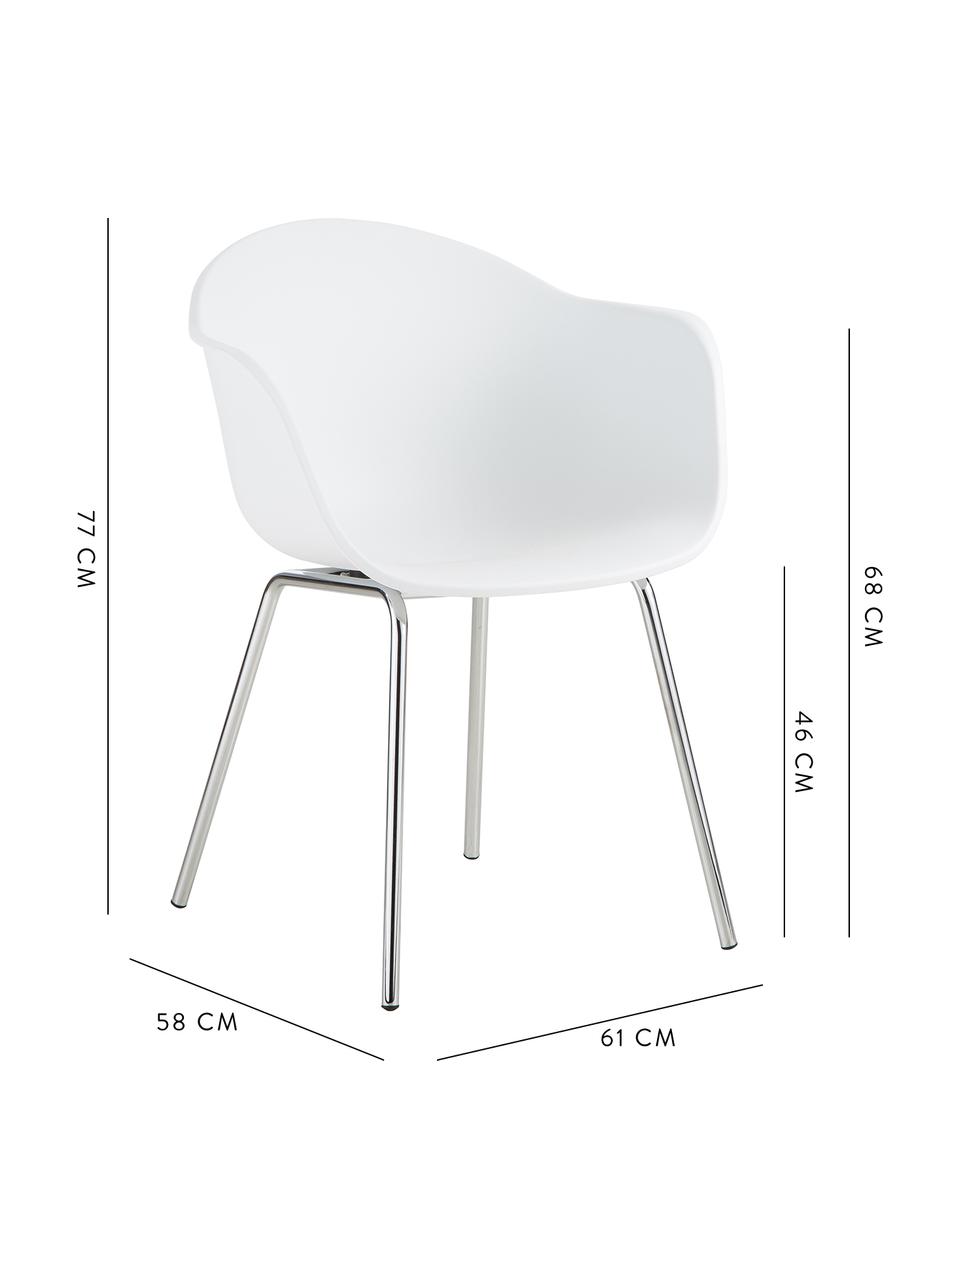 Kunststoff-Armlehnstuhl Claire mit Metallbeinen, Sitzschale: Kunststoff, Beine: Metall, galvanisiert, Weiß, Silber, B 60 x T 54 cm